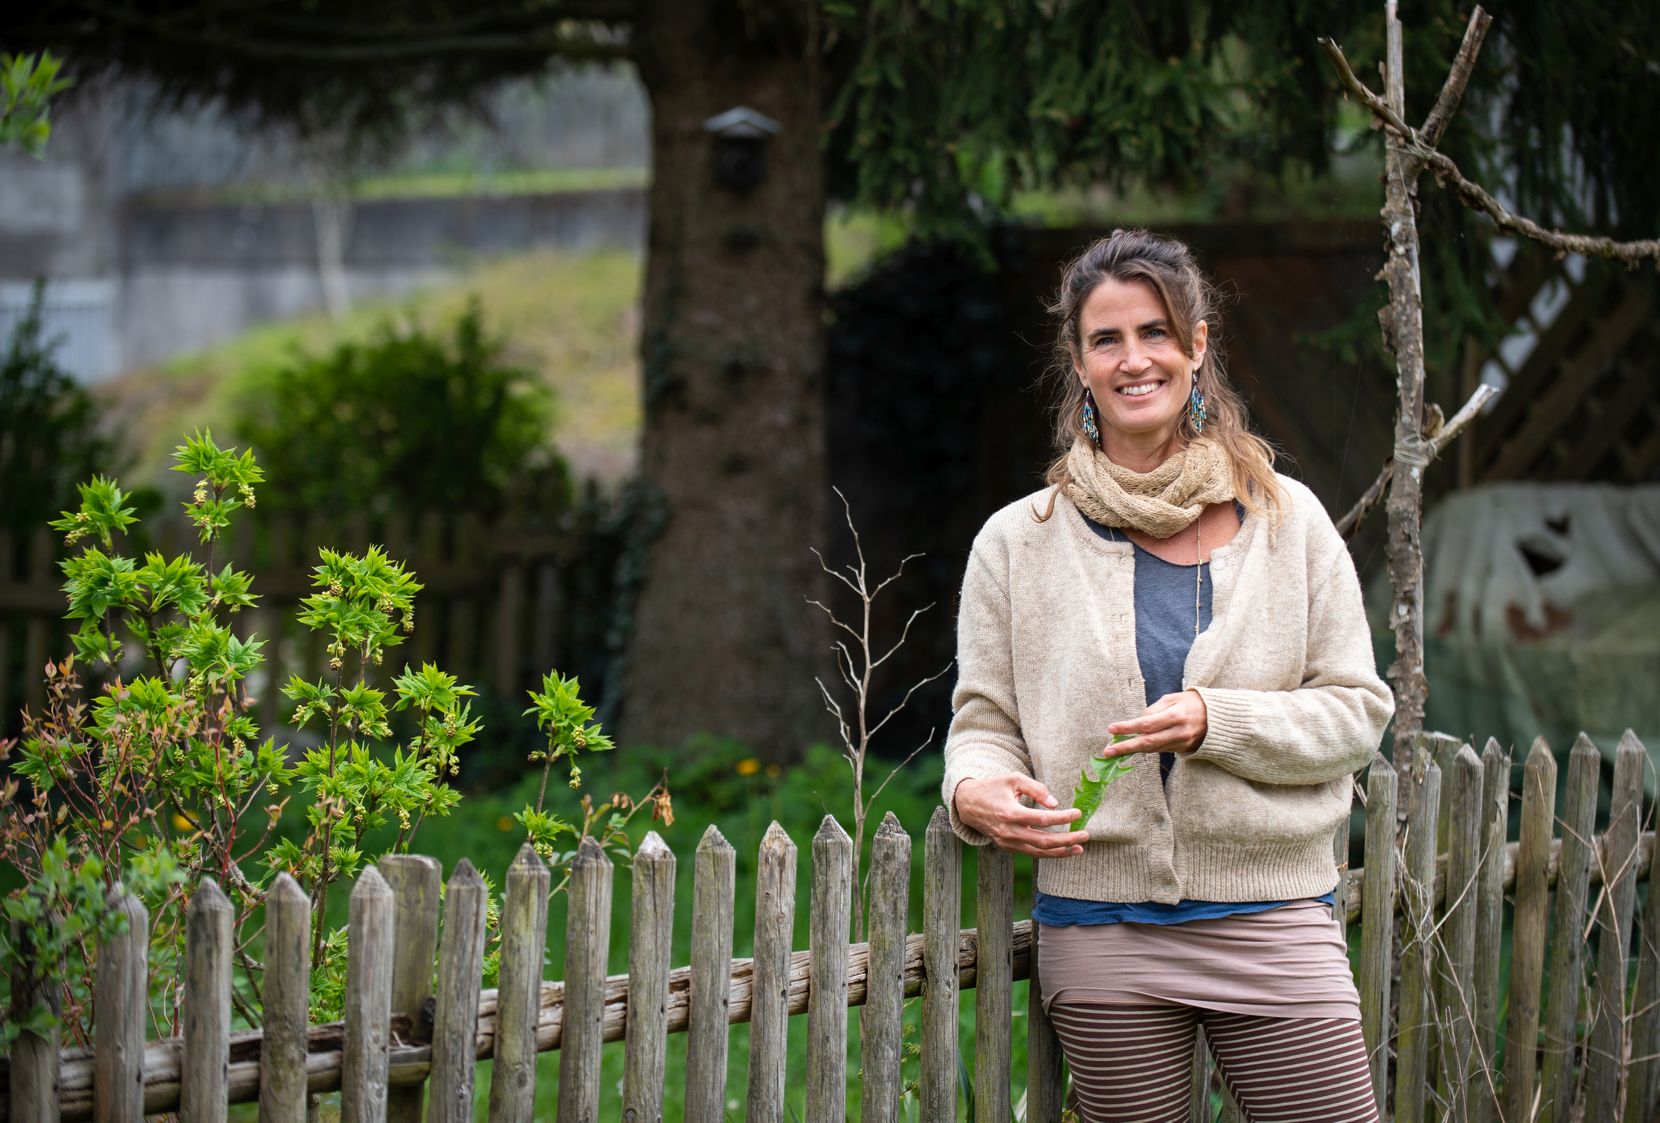 Sarah Zehnder steht vor einem Gartenzaun und hat ein Löwenzahnblatt in der Hand.